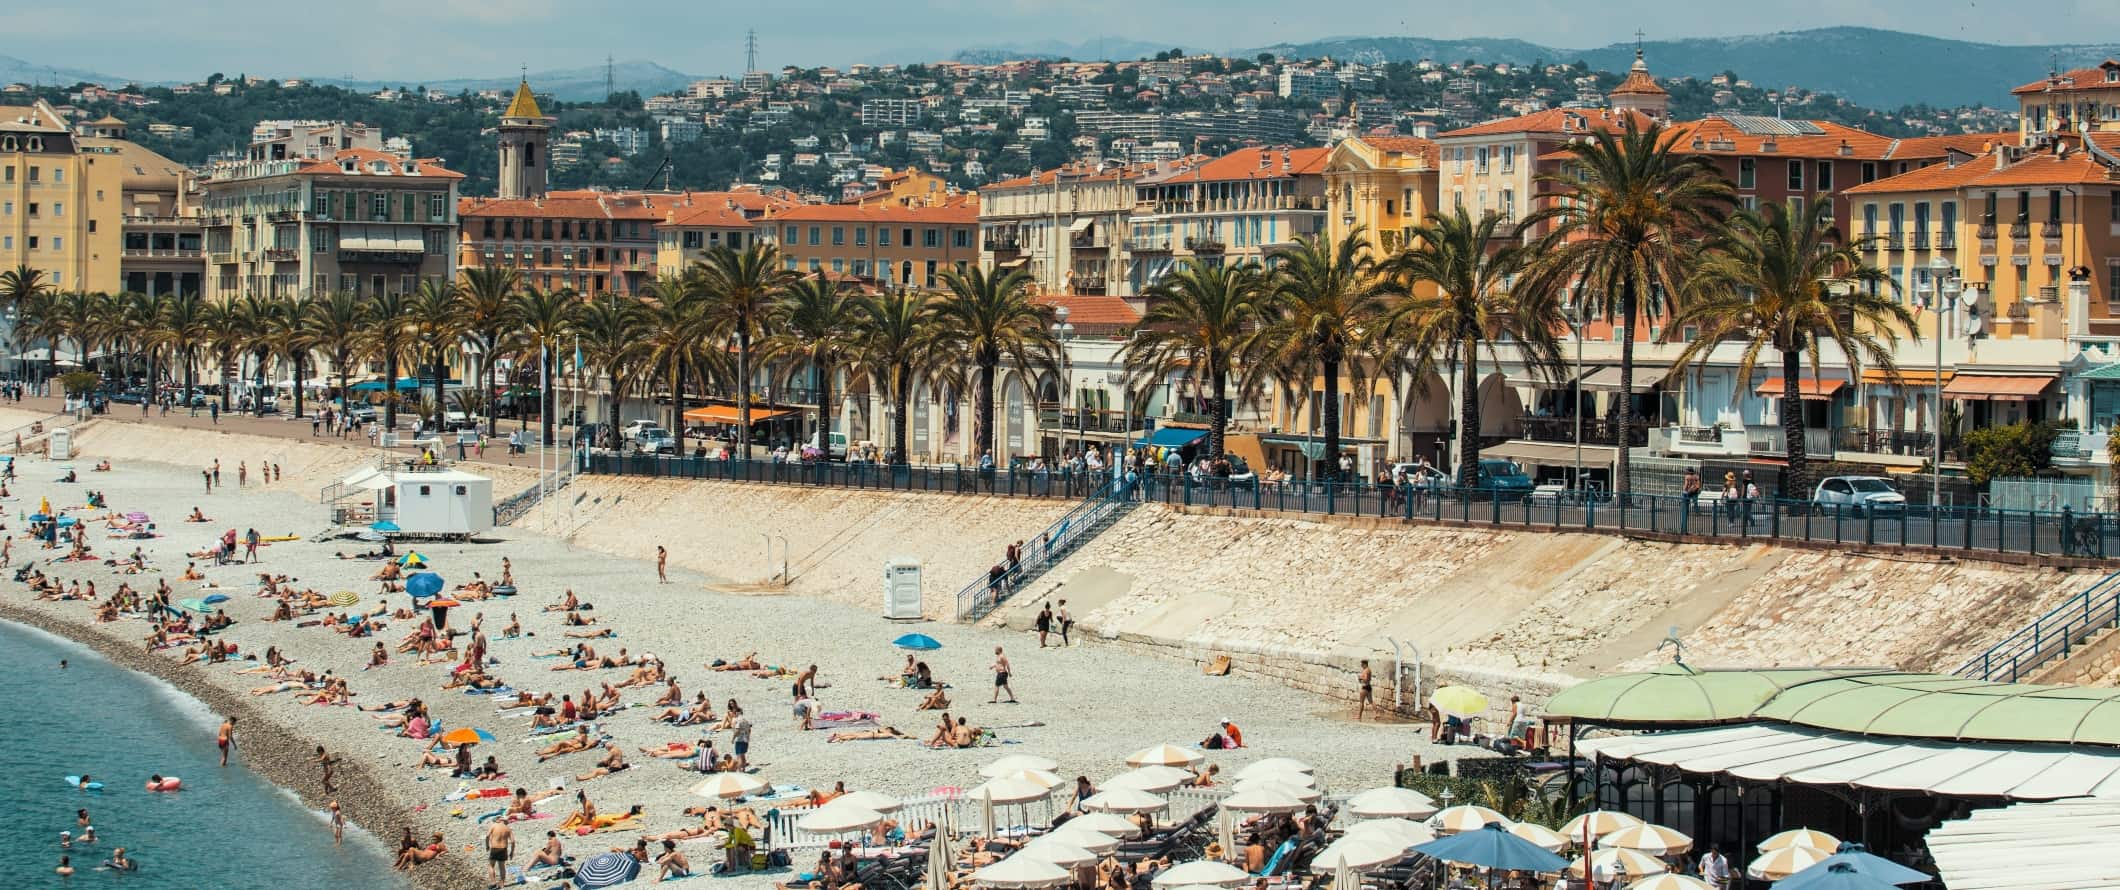 人们躺在沙滩上的棕榈树lined promenade with the city of Nice, France rising in the background